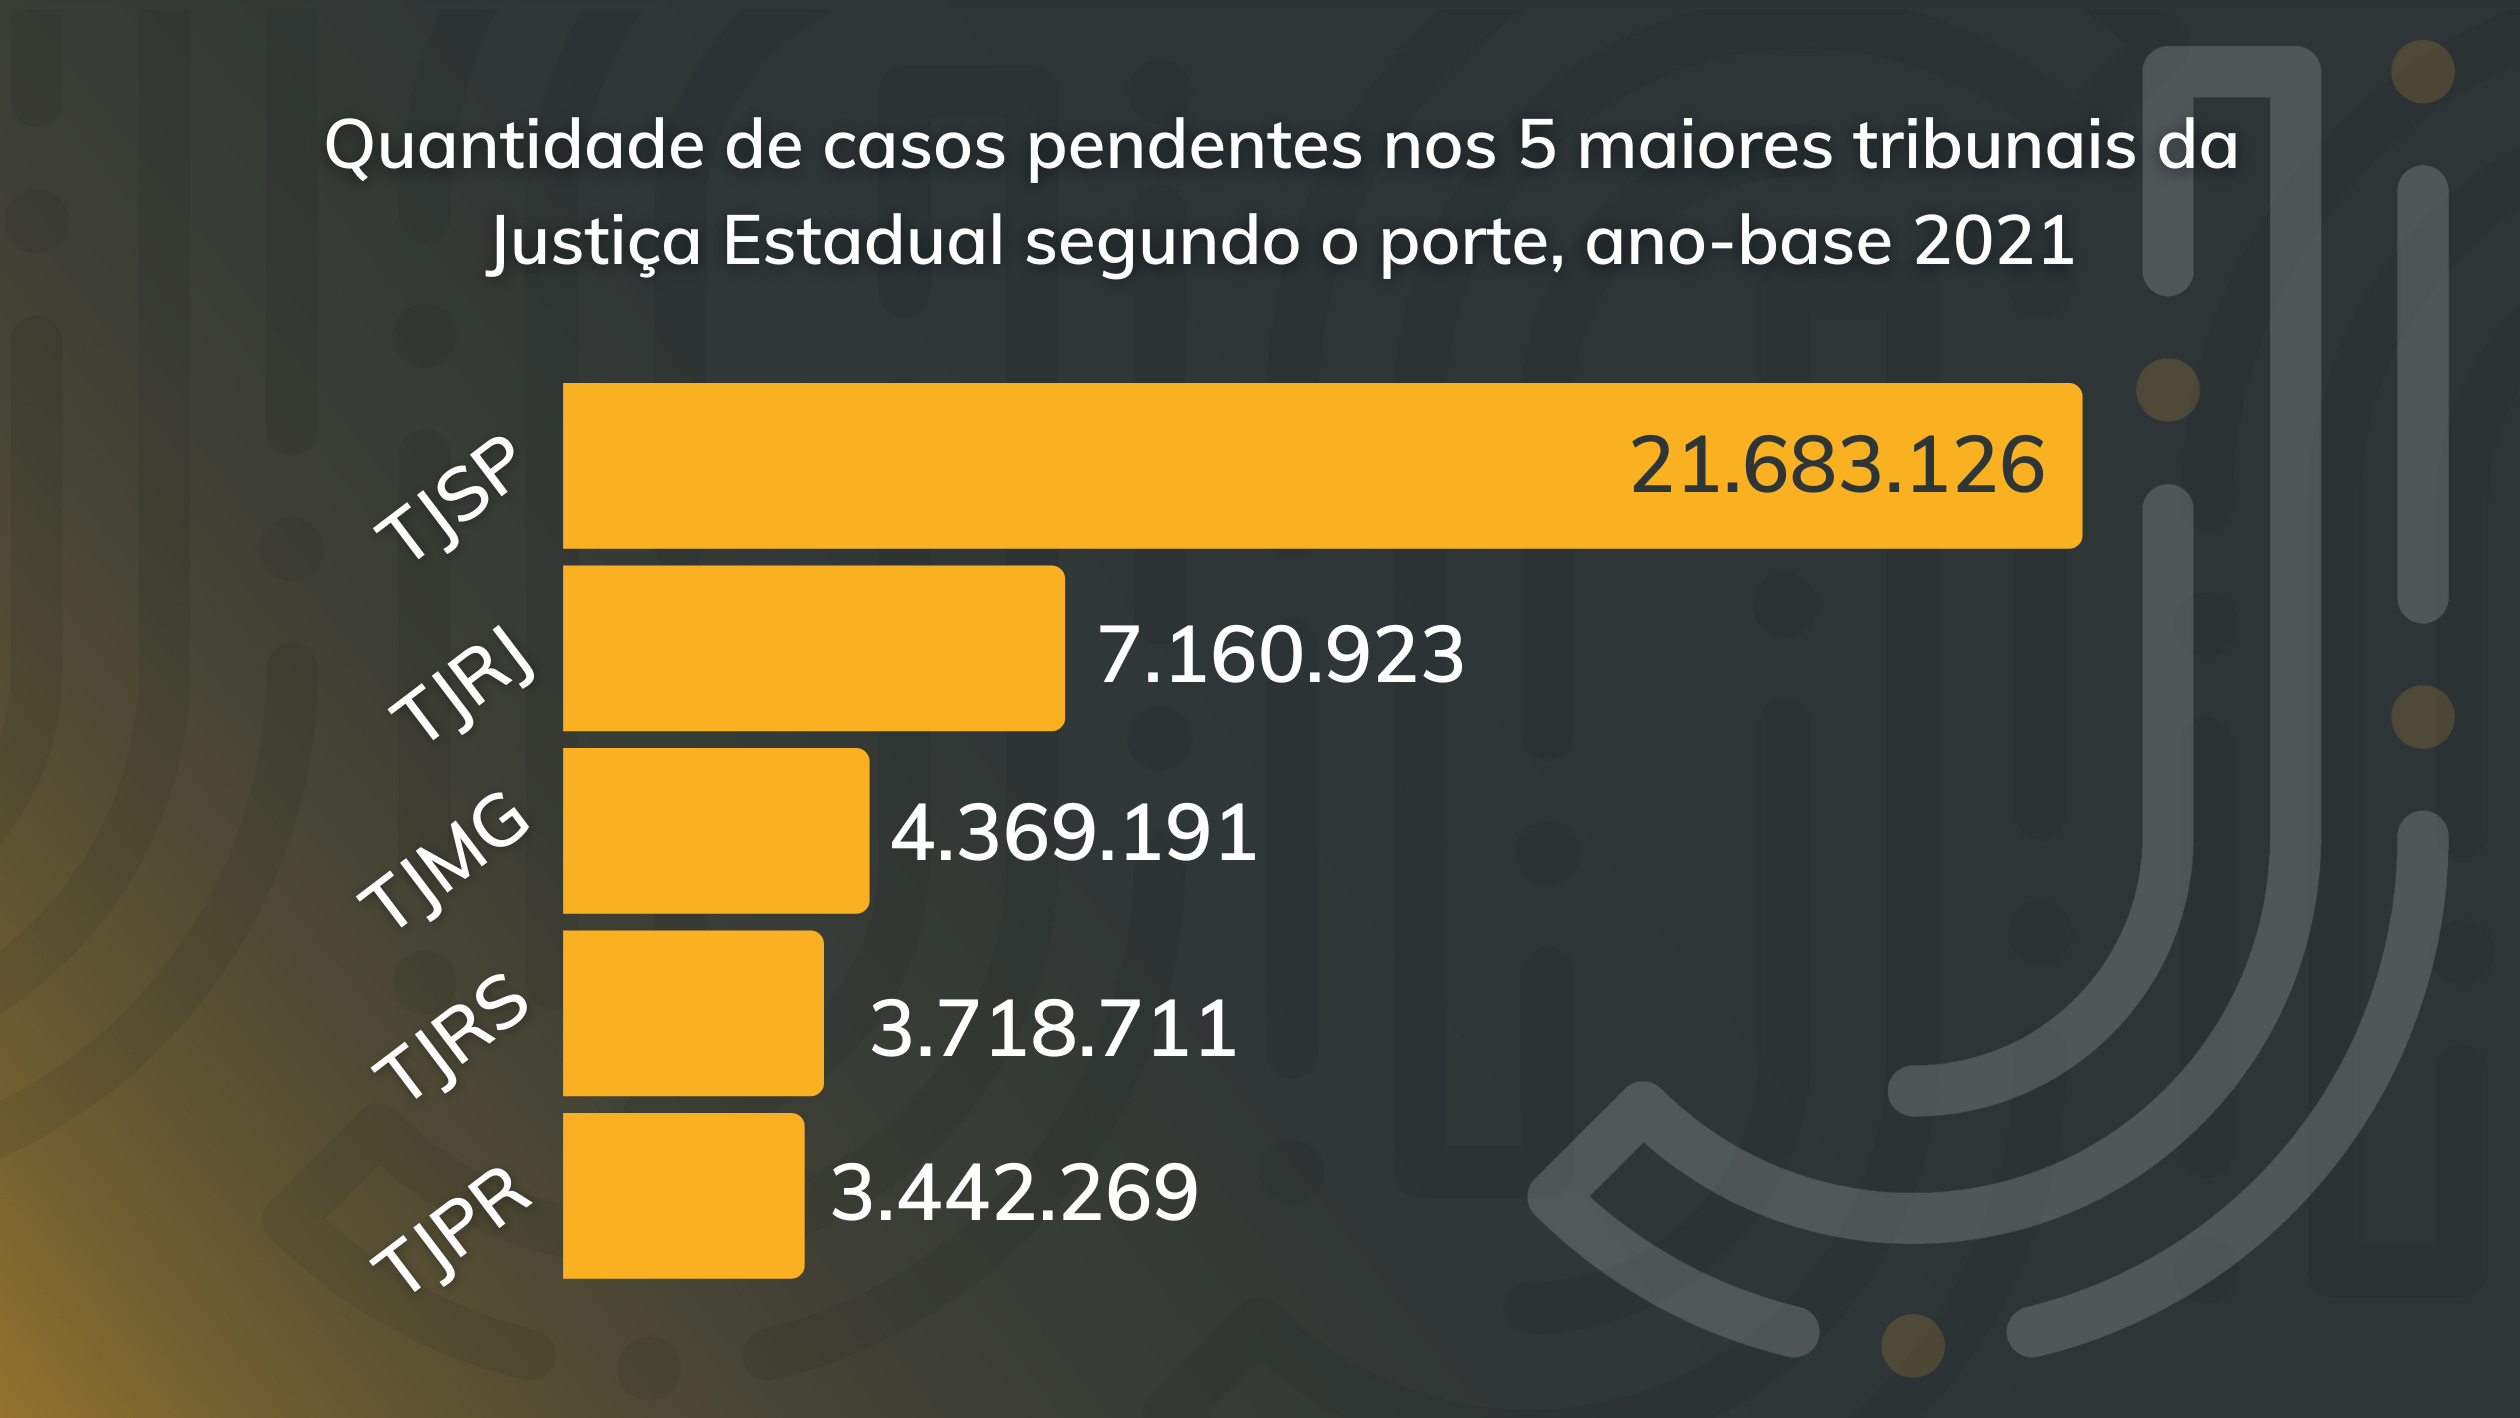 Quantidade de casos pendentes nos 5 maiores tribunais da Justiça Estadual segundo o porte, conforme o ano-base 2021 